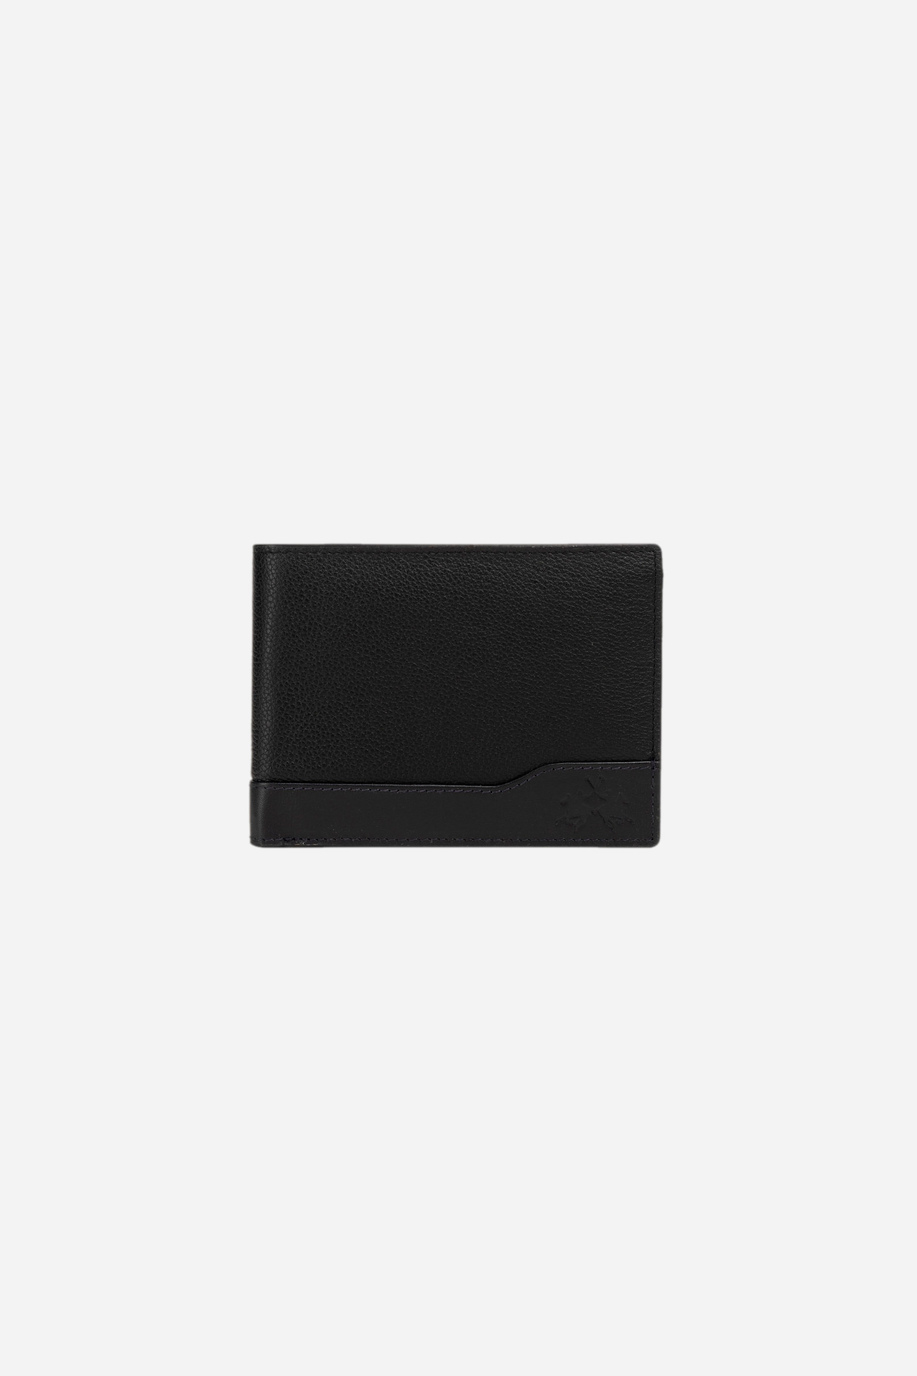 Men's leather wallet - Accessories | La Martina - Official Online Shop